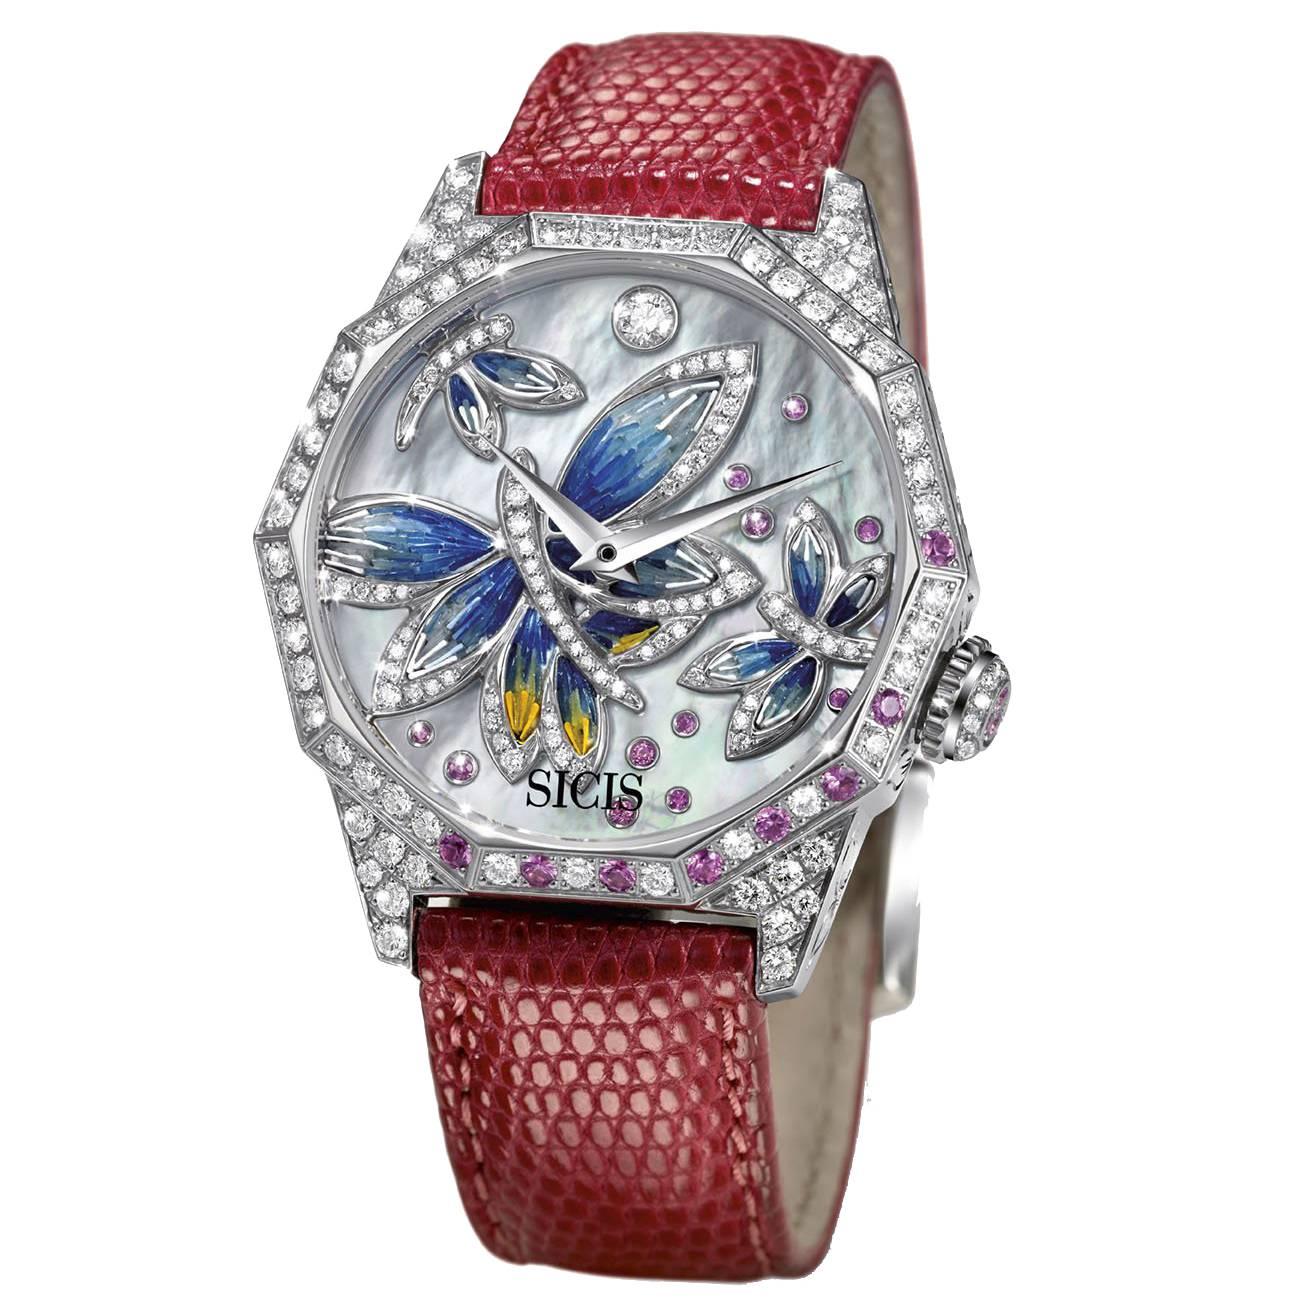 Stylish Automatic Wristwatch White Gold White Diamond Pink Sapphires Micromosaic